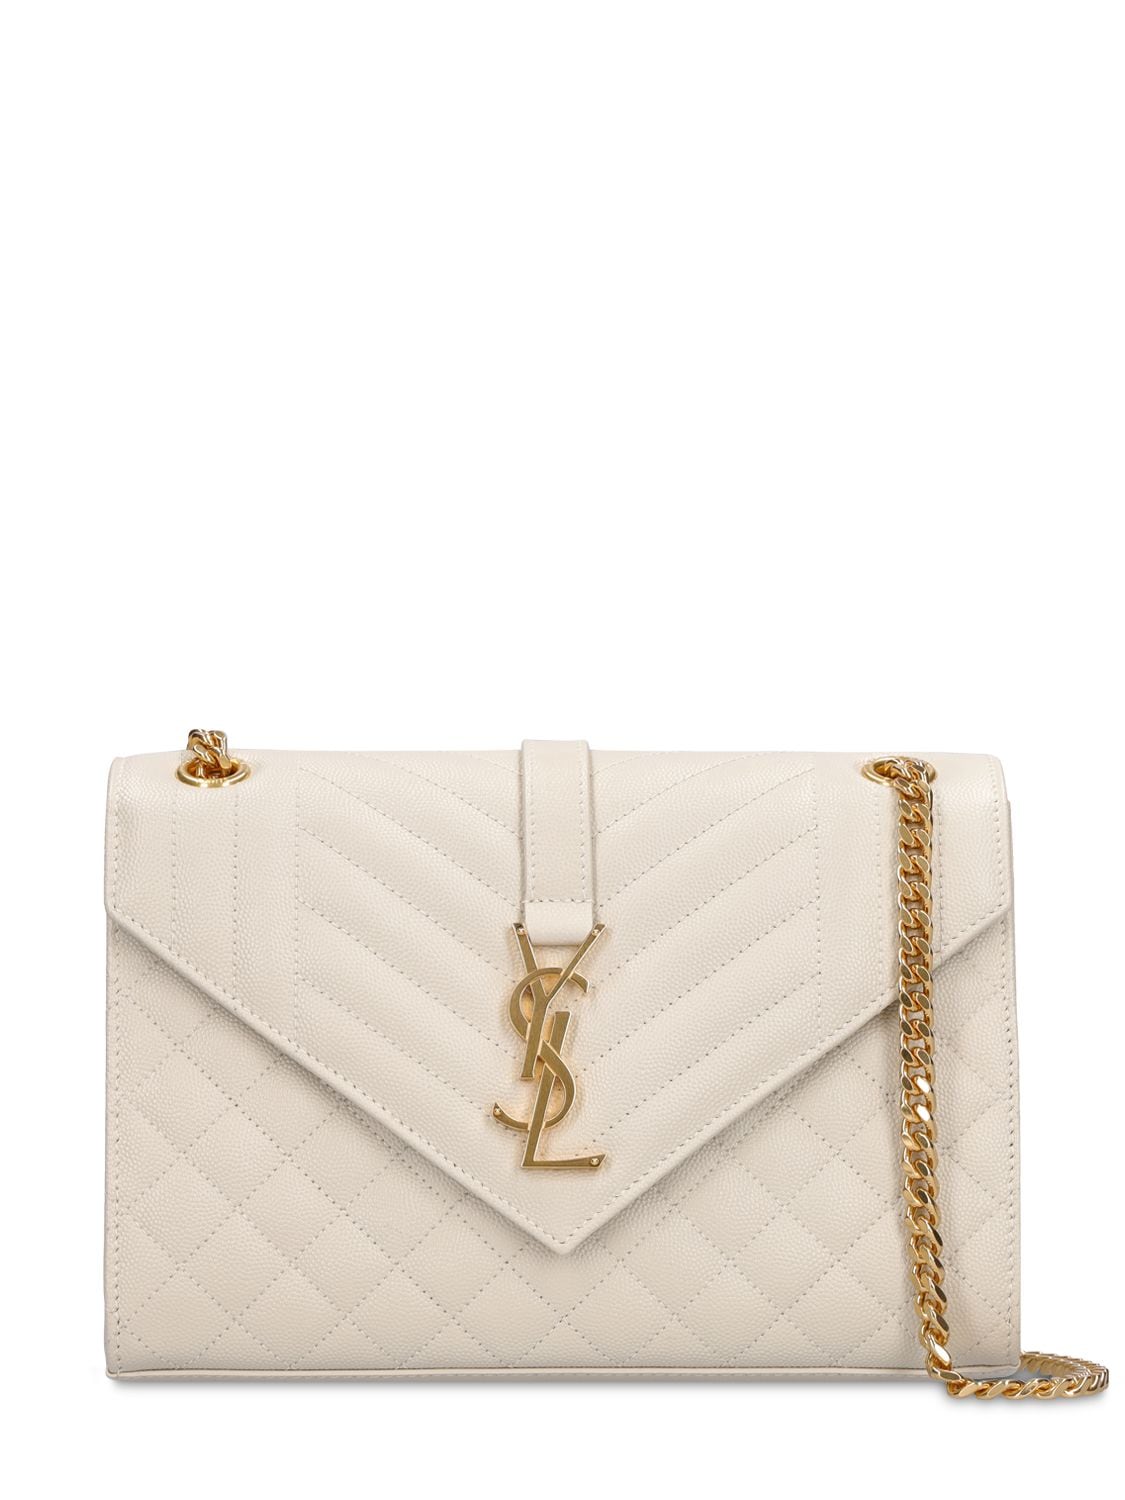 Saint Laurent Medium Envelope Quilted Leather Bag In Cream | ModeSens